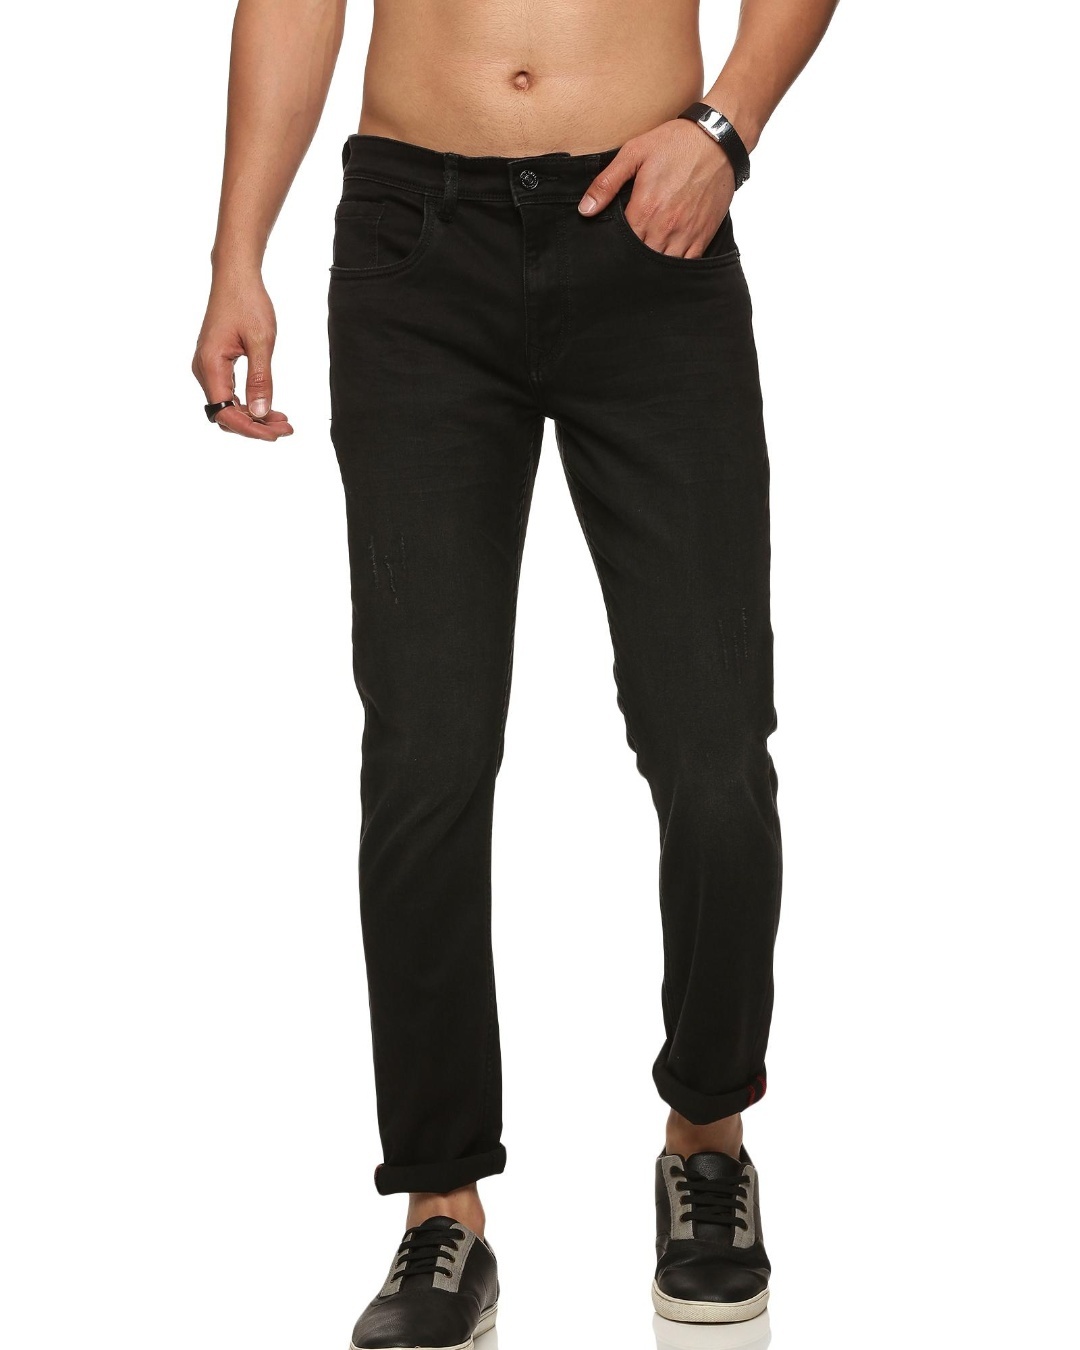 Buy Men's Black Skinny Fit Jeans Online at Bewakoof